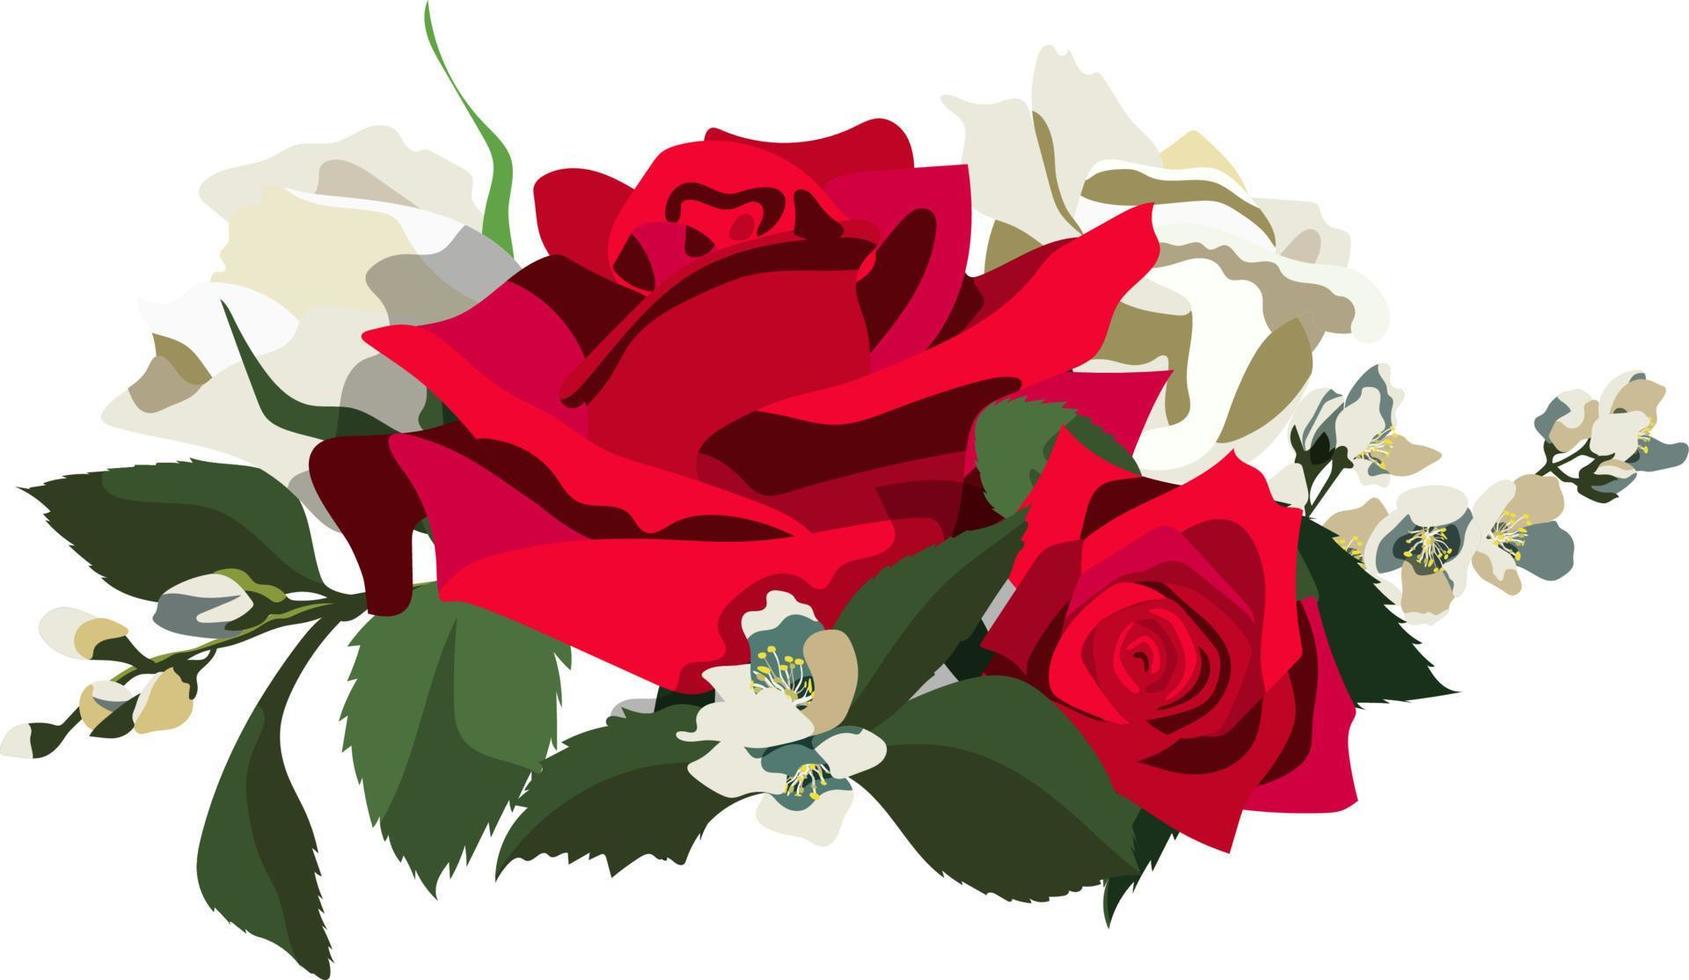 fundo floral estilo vintage com rosas vermelhas e brancas, folhas e ramos de jasmim. isolado no fundo branco vetor